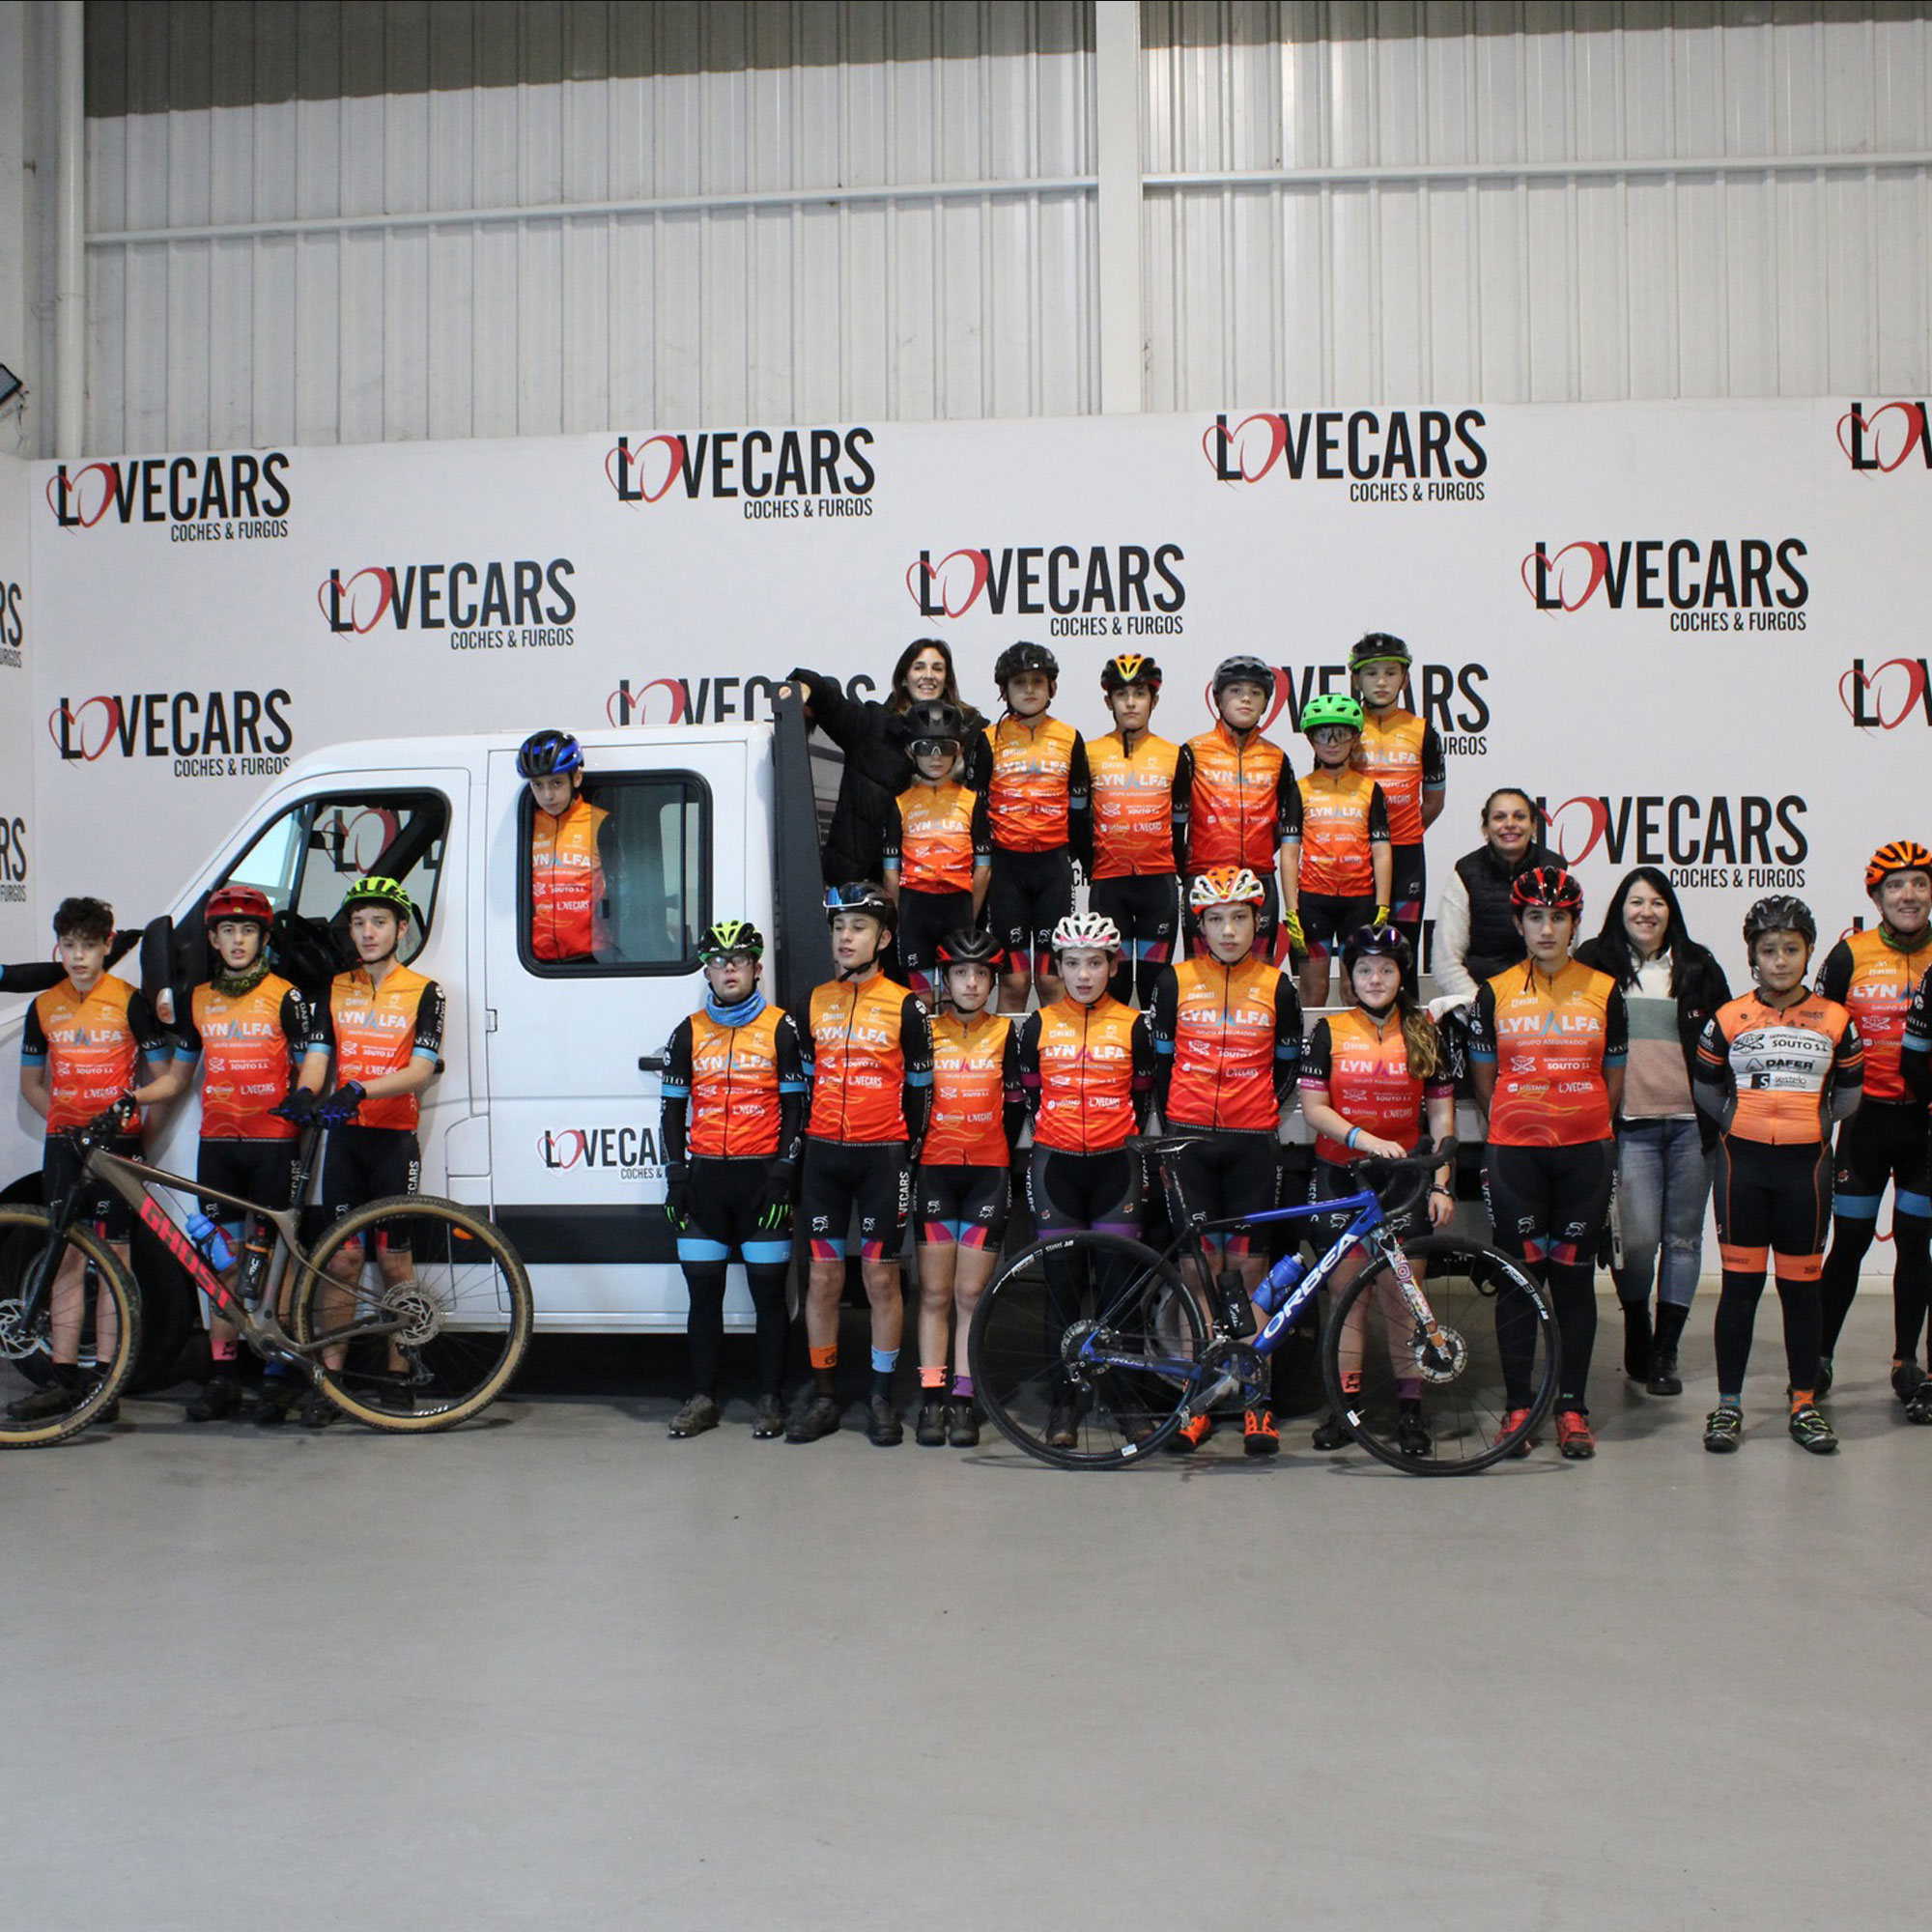 lovecars coches y furgonetas de segundamano apoyando el deporte de base: club ciclista de ponteareas